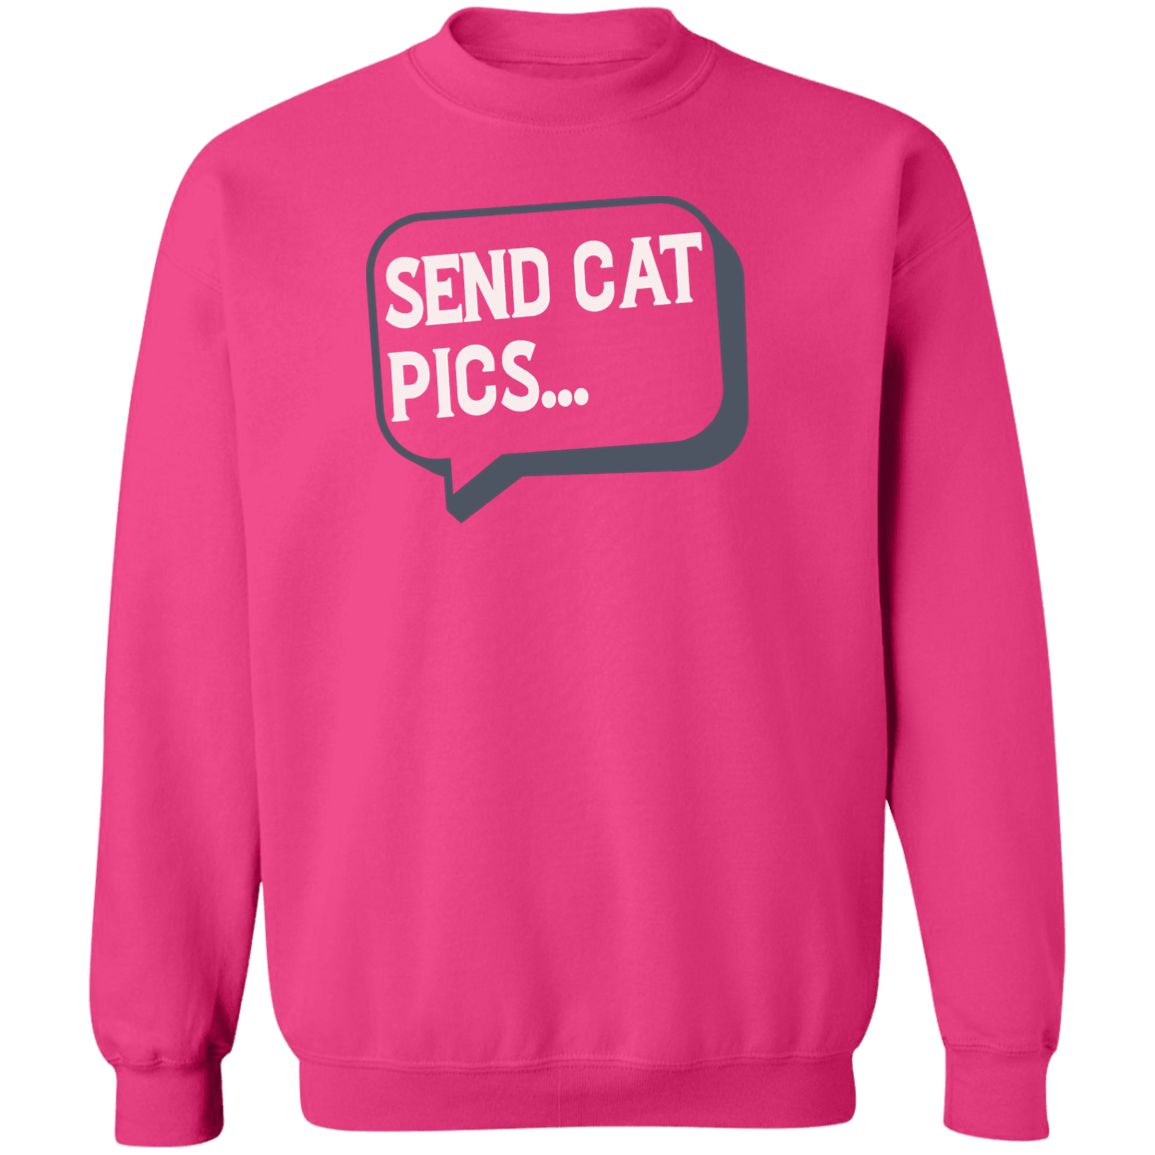 Send Cat Pics - Sweatshirt.